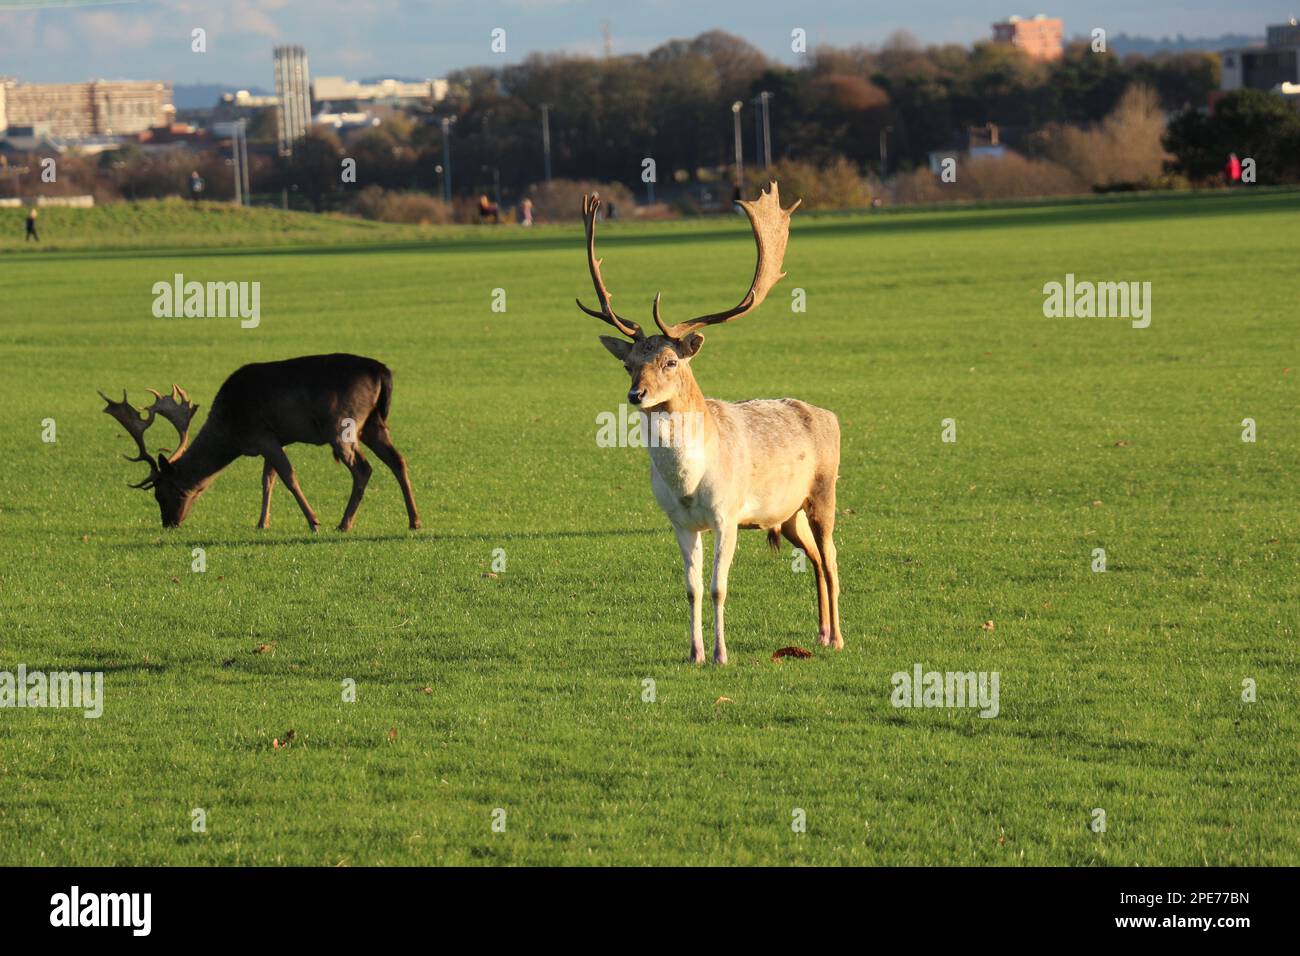 In mezzo alla tranquilla bellezza di un parco irlandese, un grazioso cervo si erge e gioca, incarnando l'essenza serena dell'affascinante fauna selvatica irlandese Foto Stock